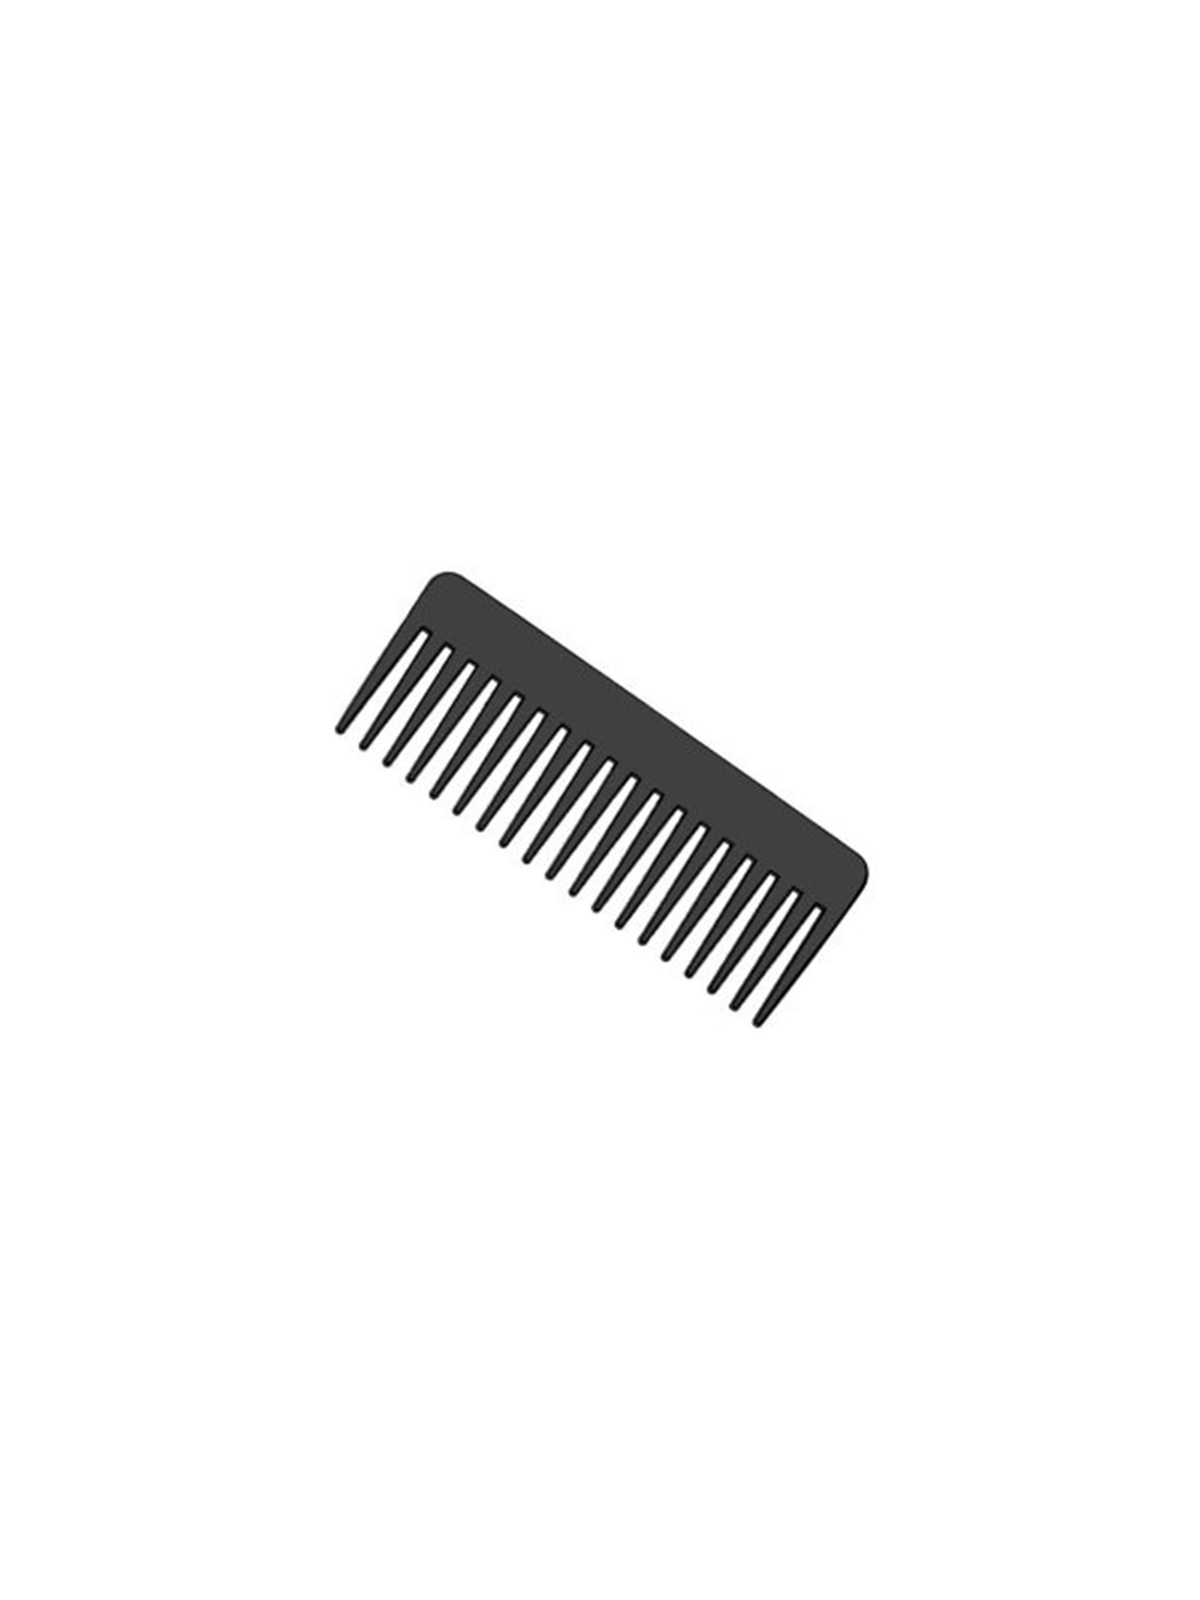 Big Comb